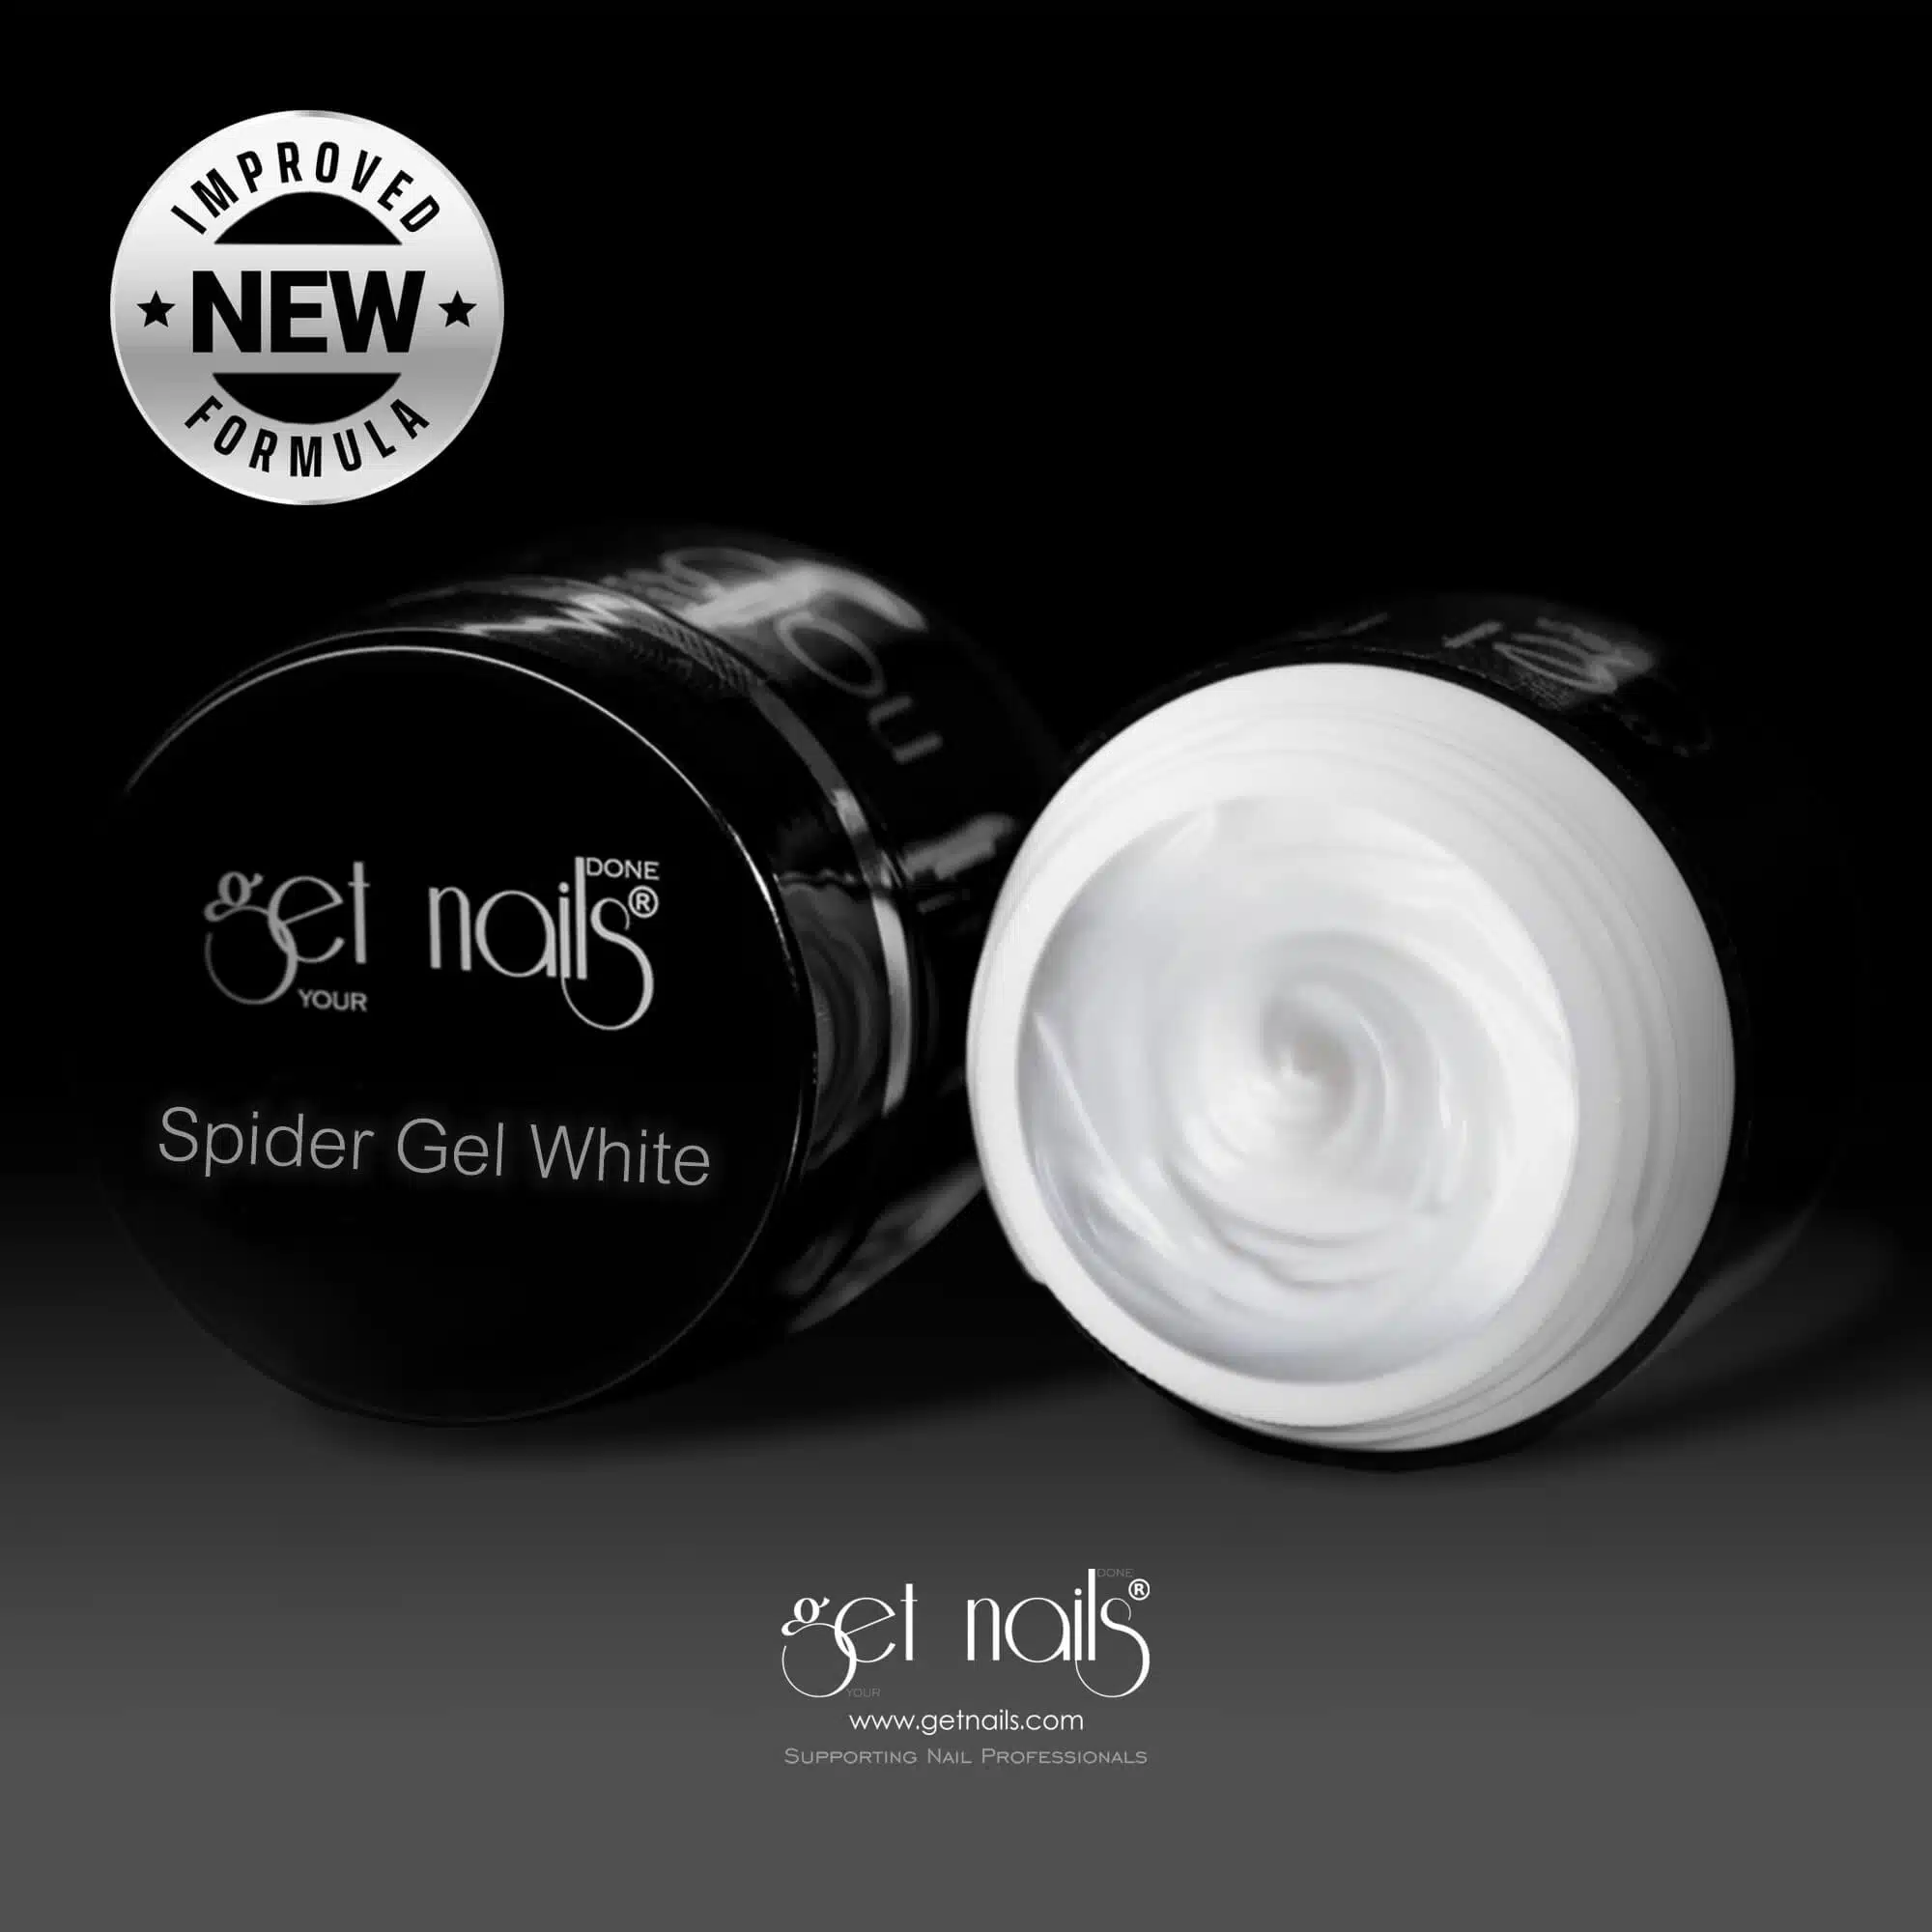 Get Nails Austria - Spider Gel White / White